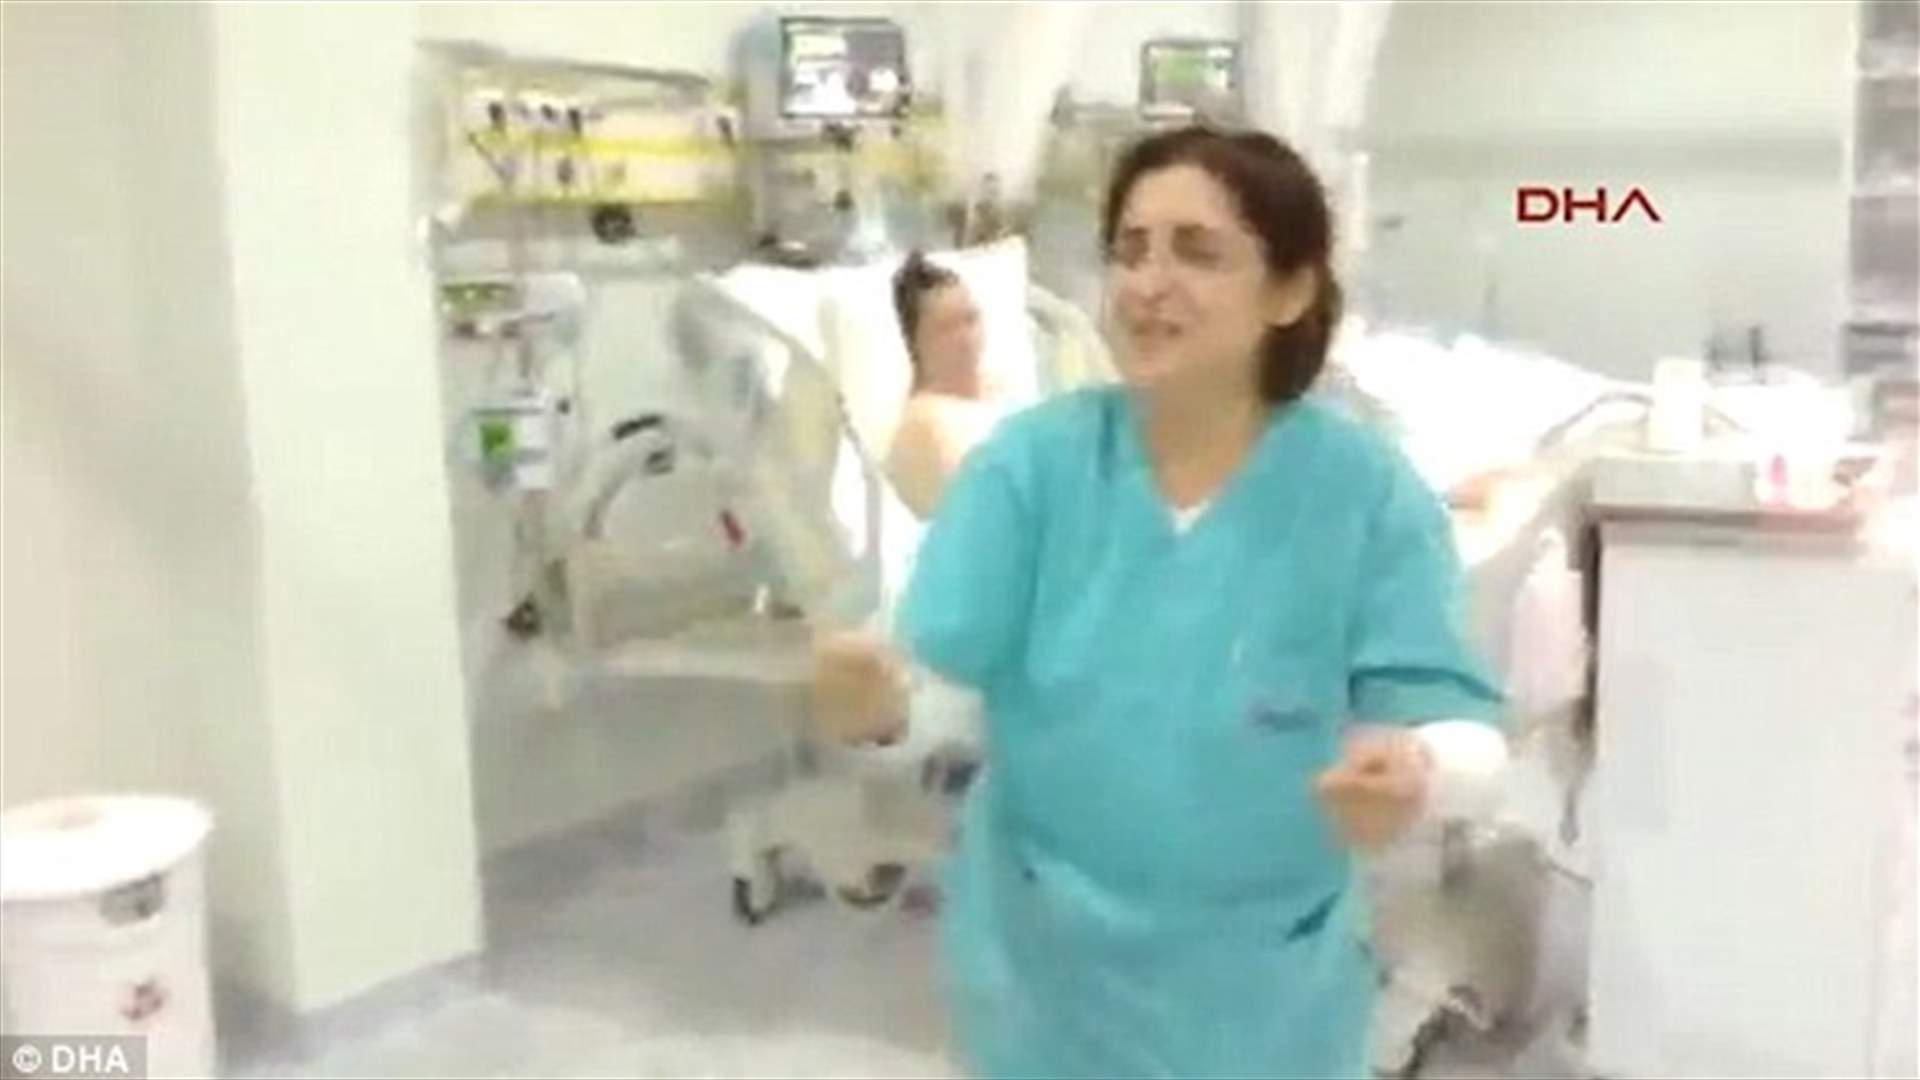 فيديو من داخل مستشفى: ممرضات يرقصن داخل غرفة العناية الفائقة!